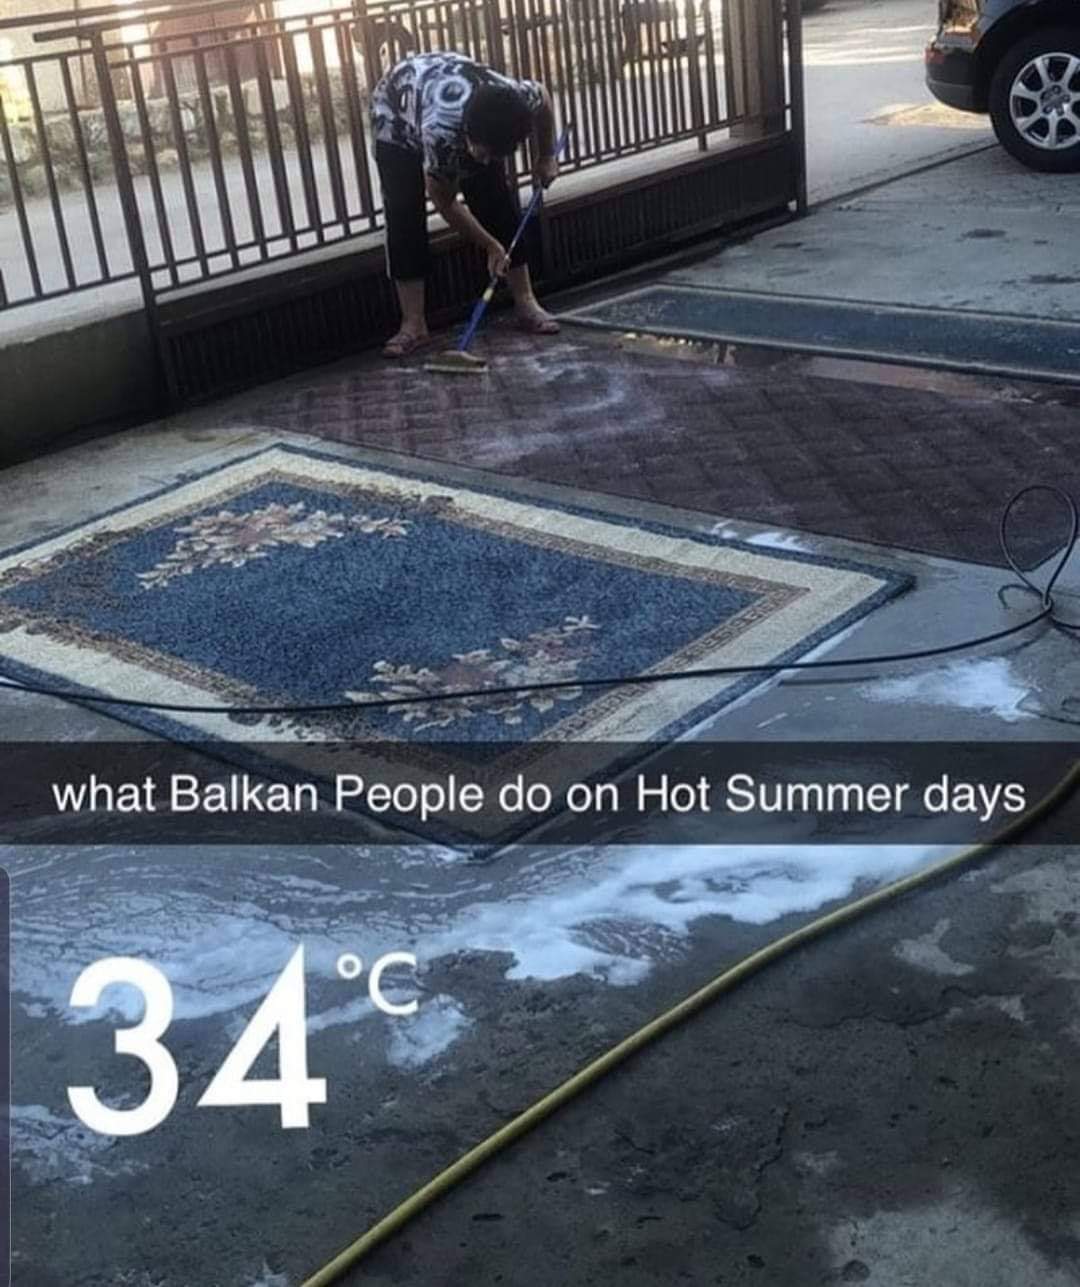 slavic meme - asphalt - what Balkan People do on Hot Summer days 34C